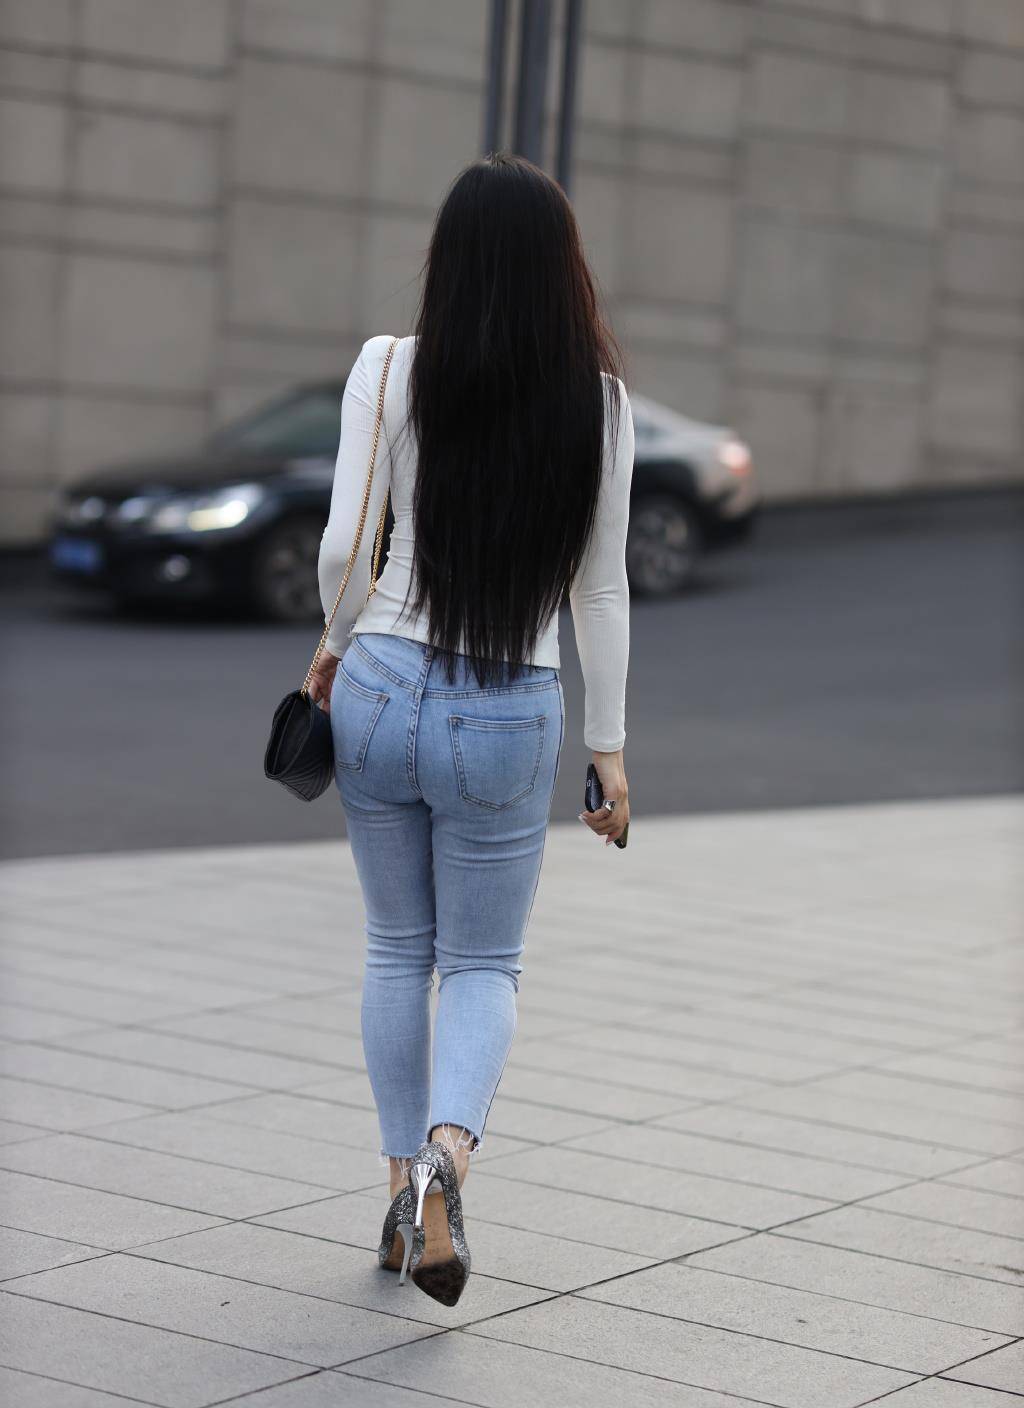 简约的牛仔裤穿出精致的美长发齐腰尽显美的背影